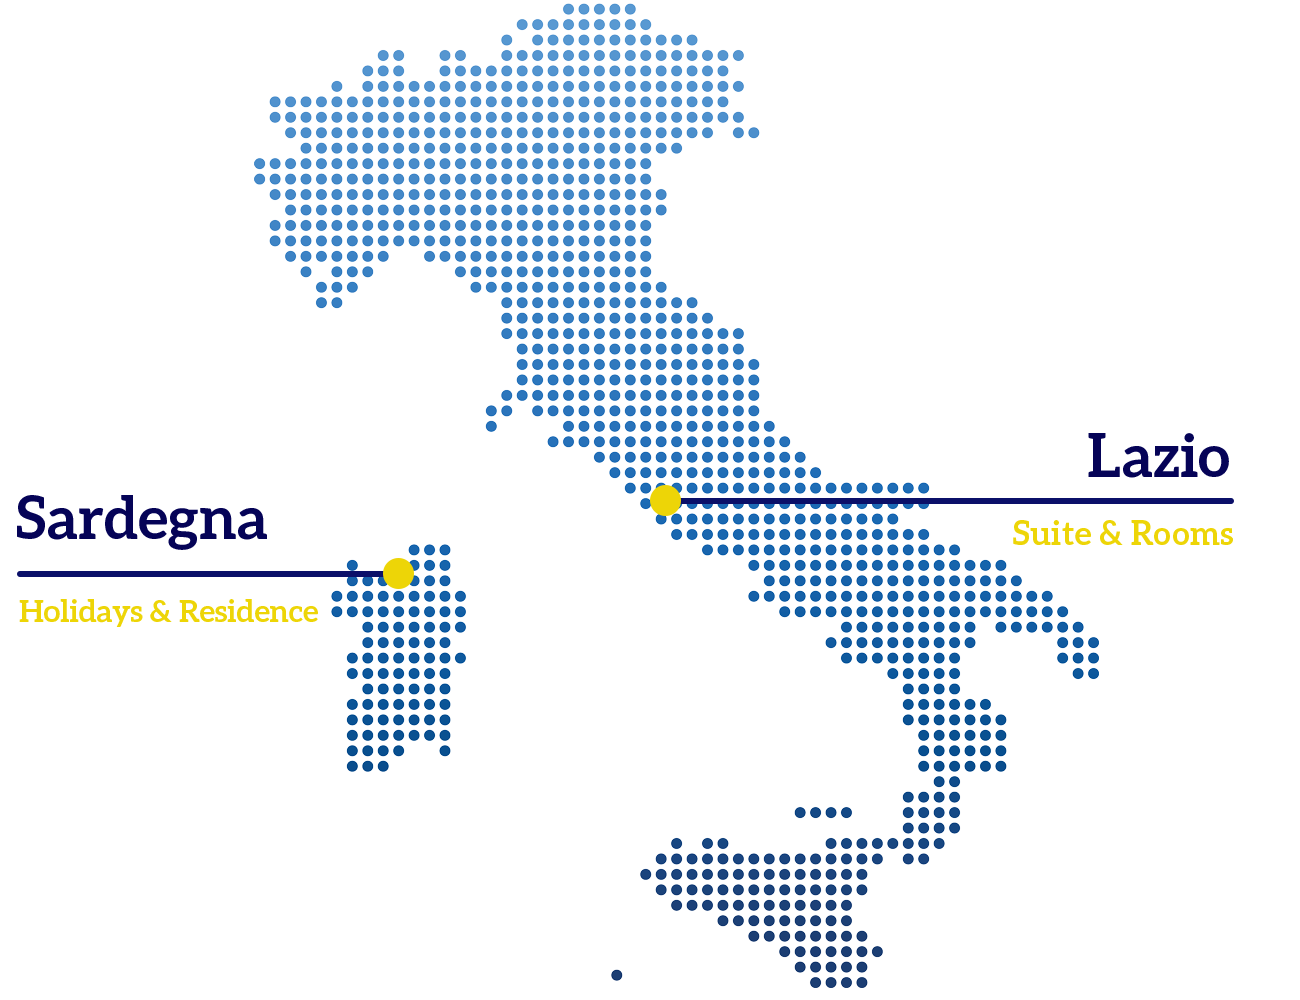 regione italia